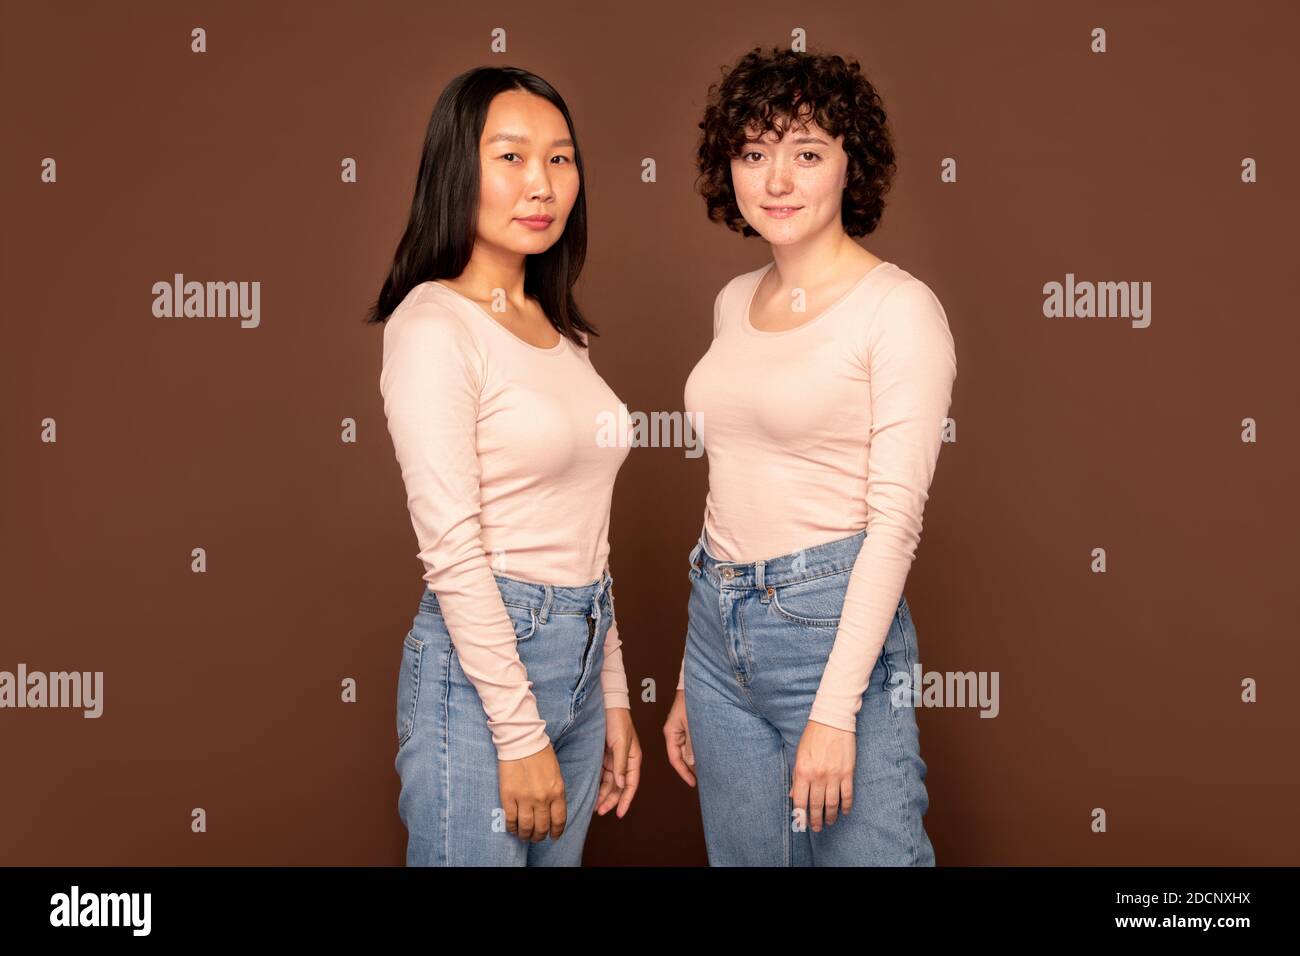 Zwei junge Frauen in weißen Pullovern und blauen Jeans stehen Nah beieinander Stockfoto